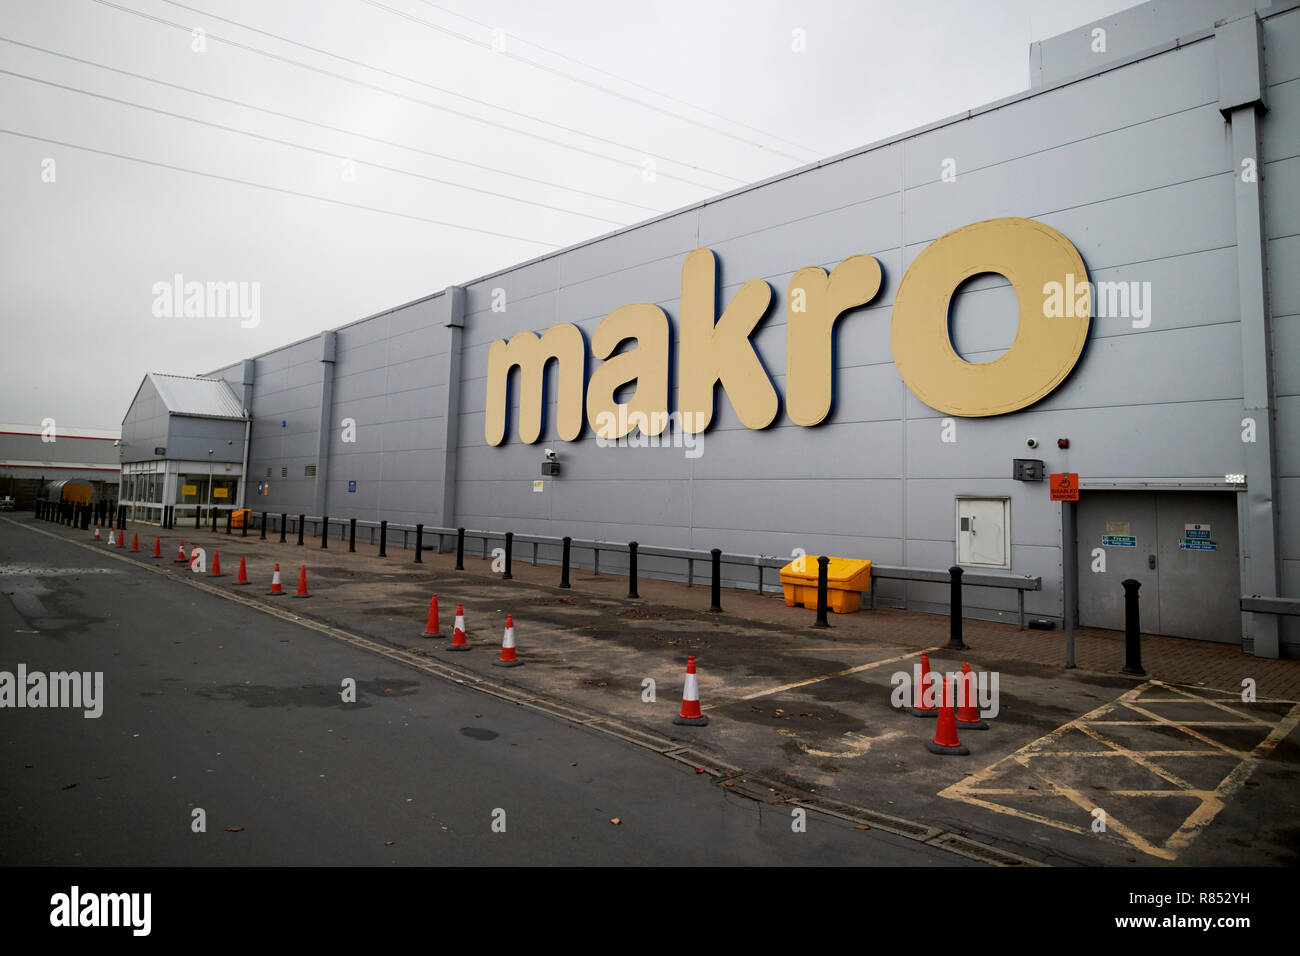 Makro booker wholesaler outlet kirkby merseyside england uk Stock Photo